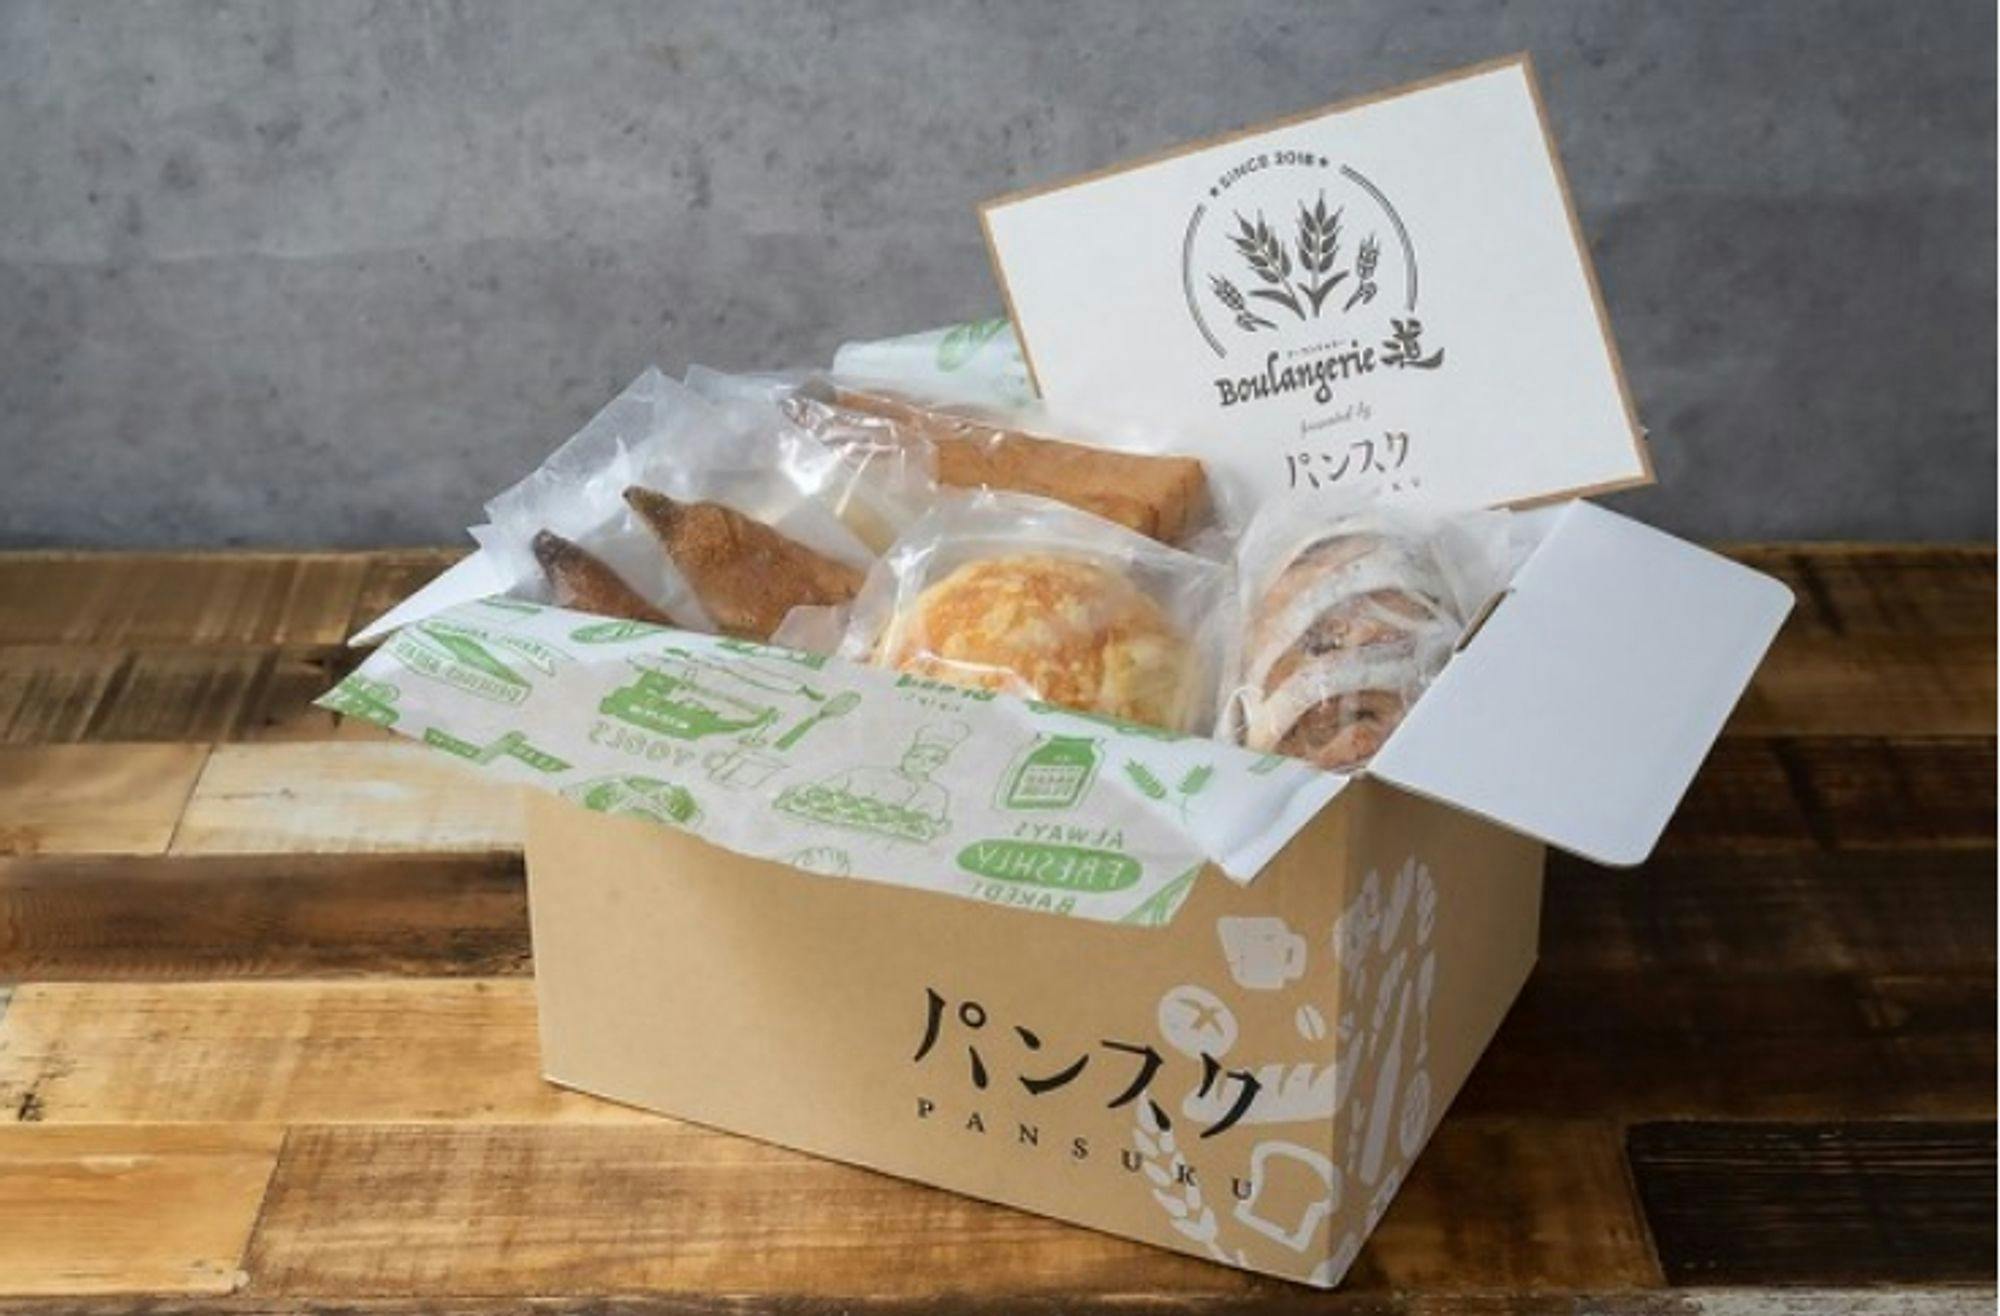 3만명이 선택한 일본 빵 정기배송으로 보는 ‘구독 커머스’의 성공 법칙